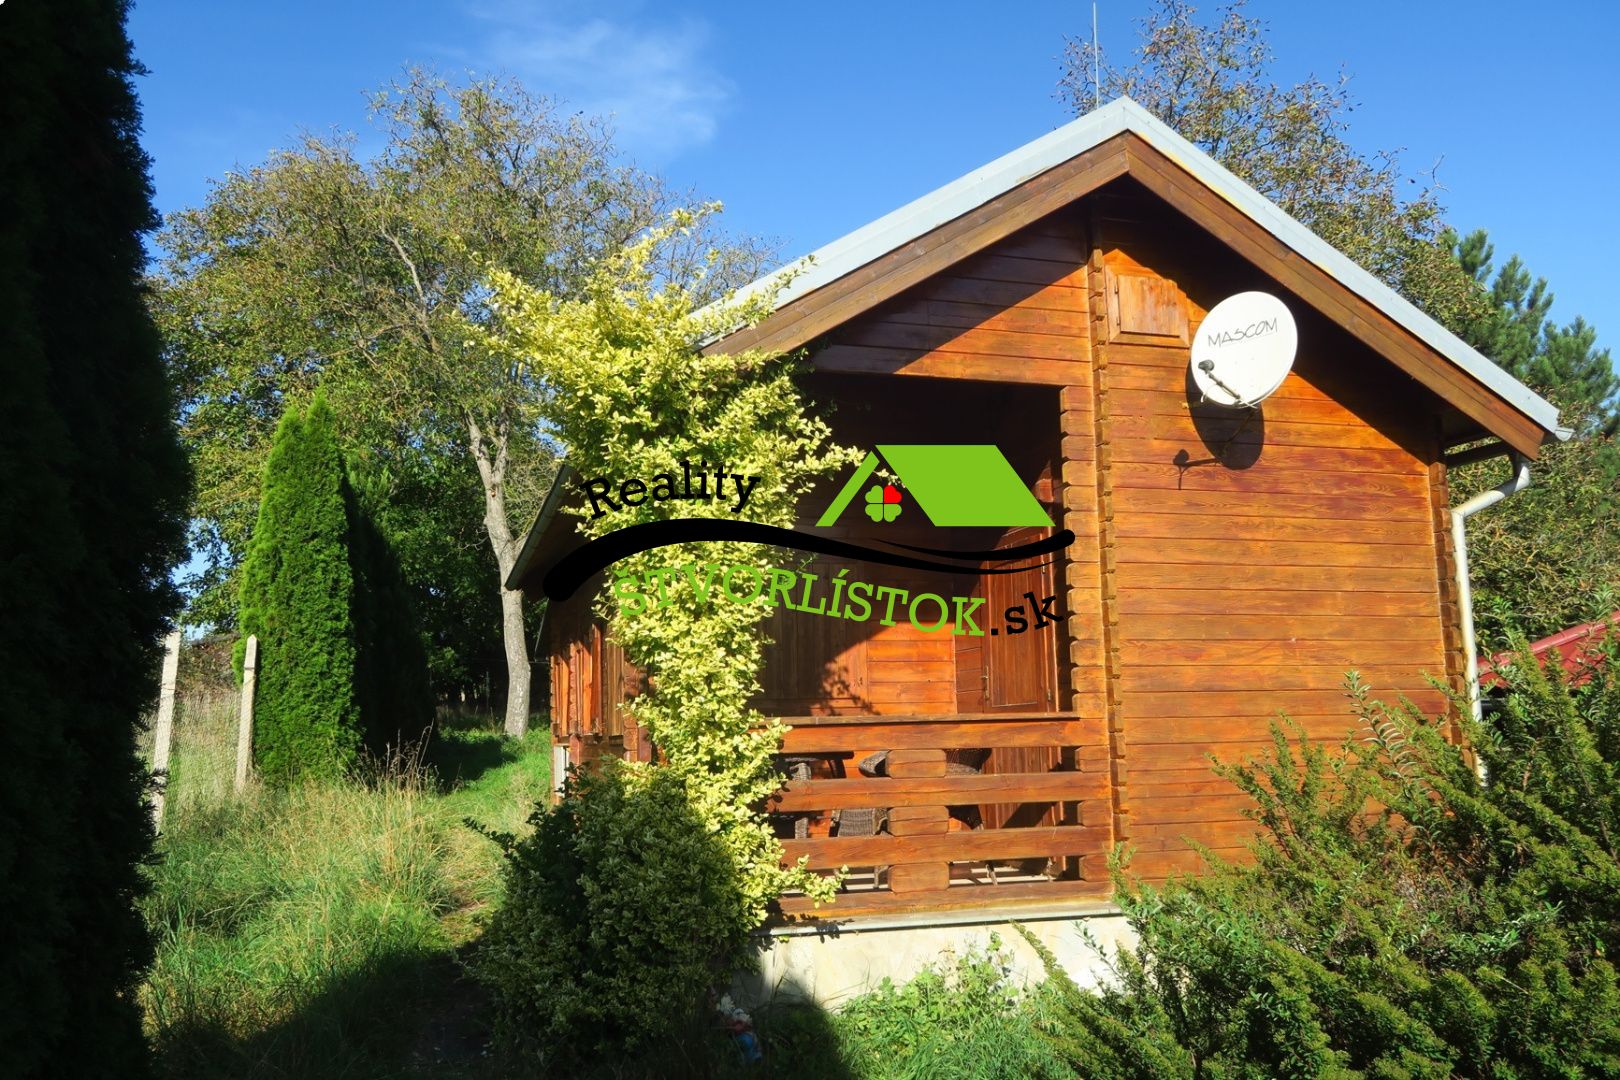 Ponúkame vám záhradnú chatu v obci Košariská